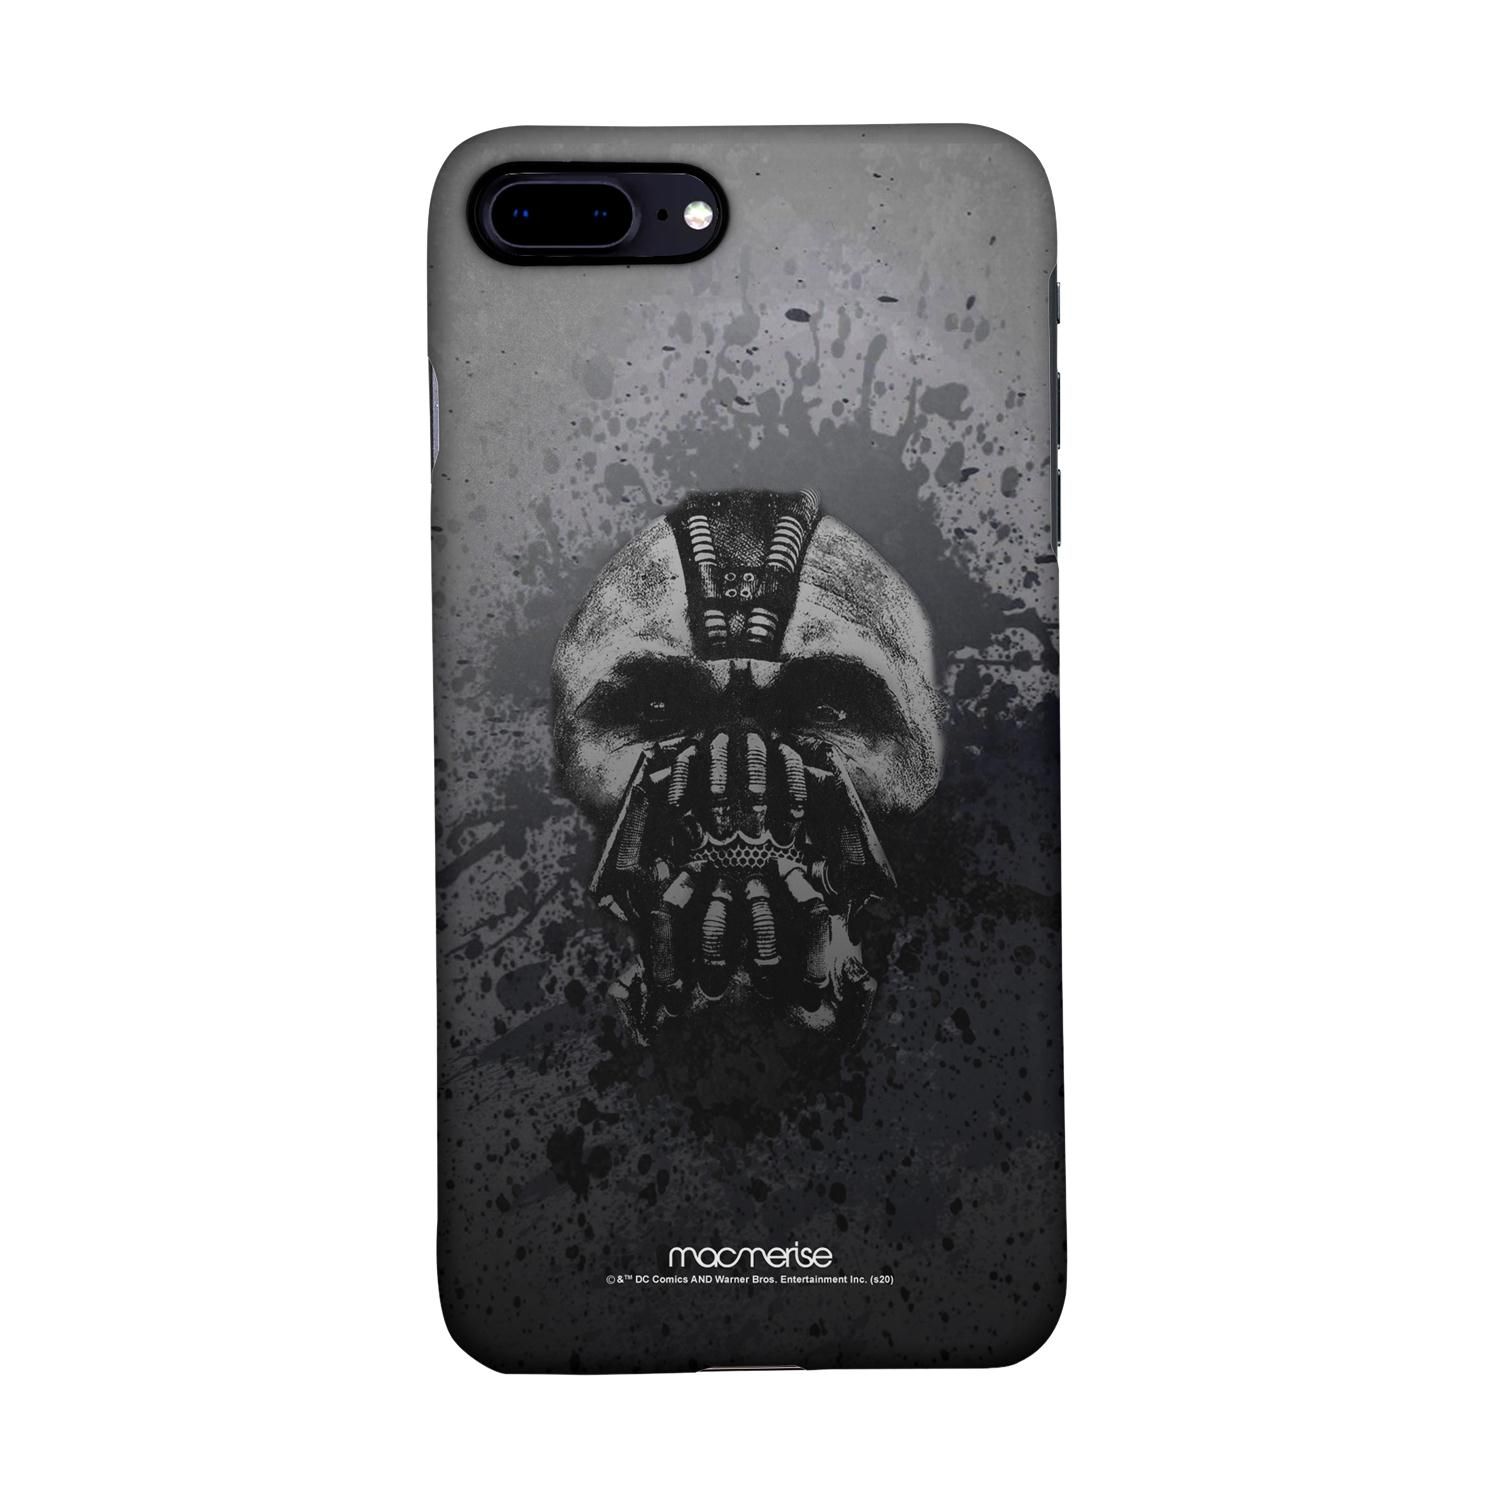 Buy Bane is Watching - Sleek Phone Case for iPhone 8 Plus Online